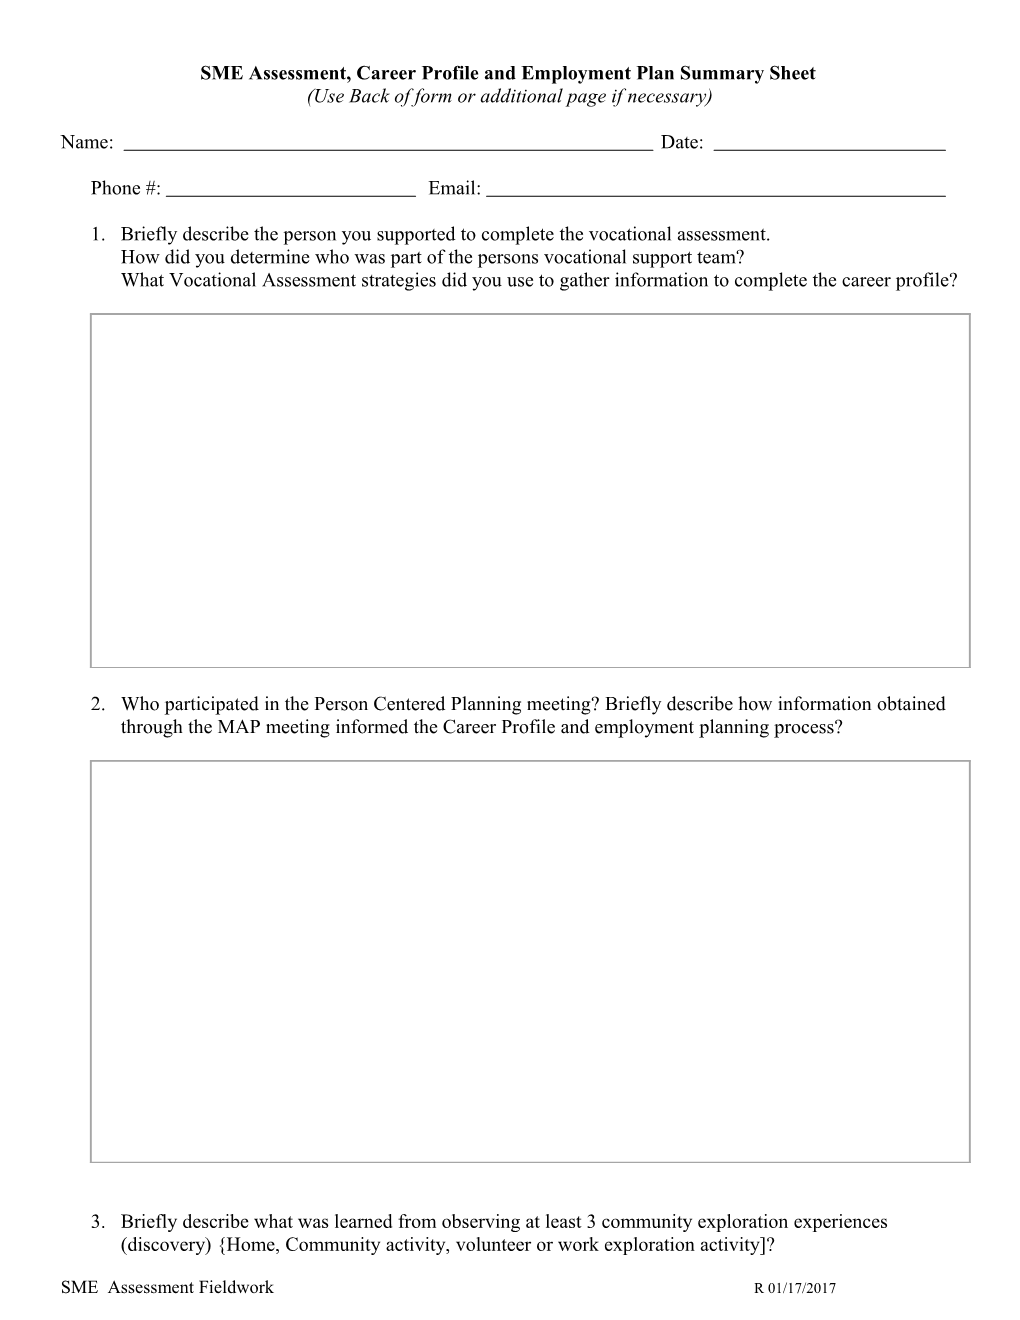 Fieldwork 1, Summary Sheet A